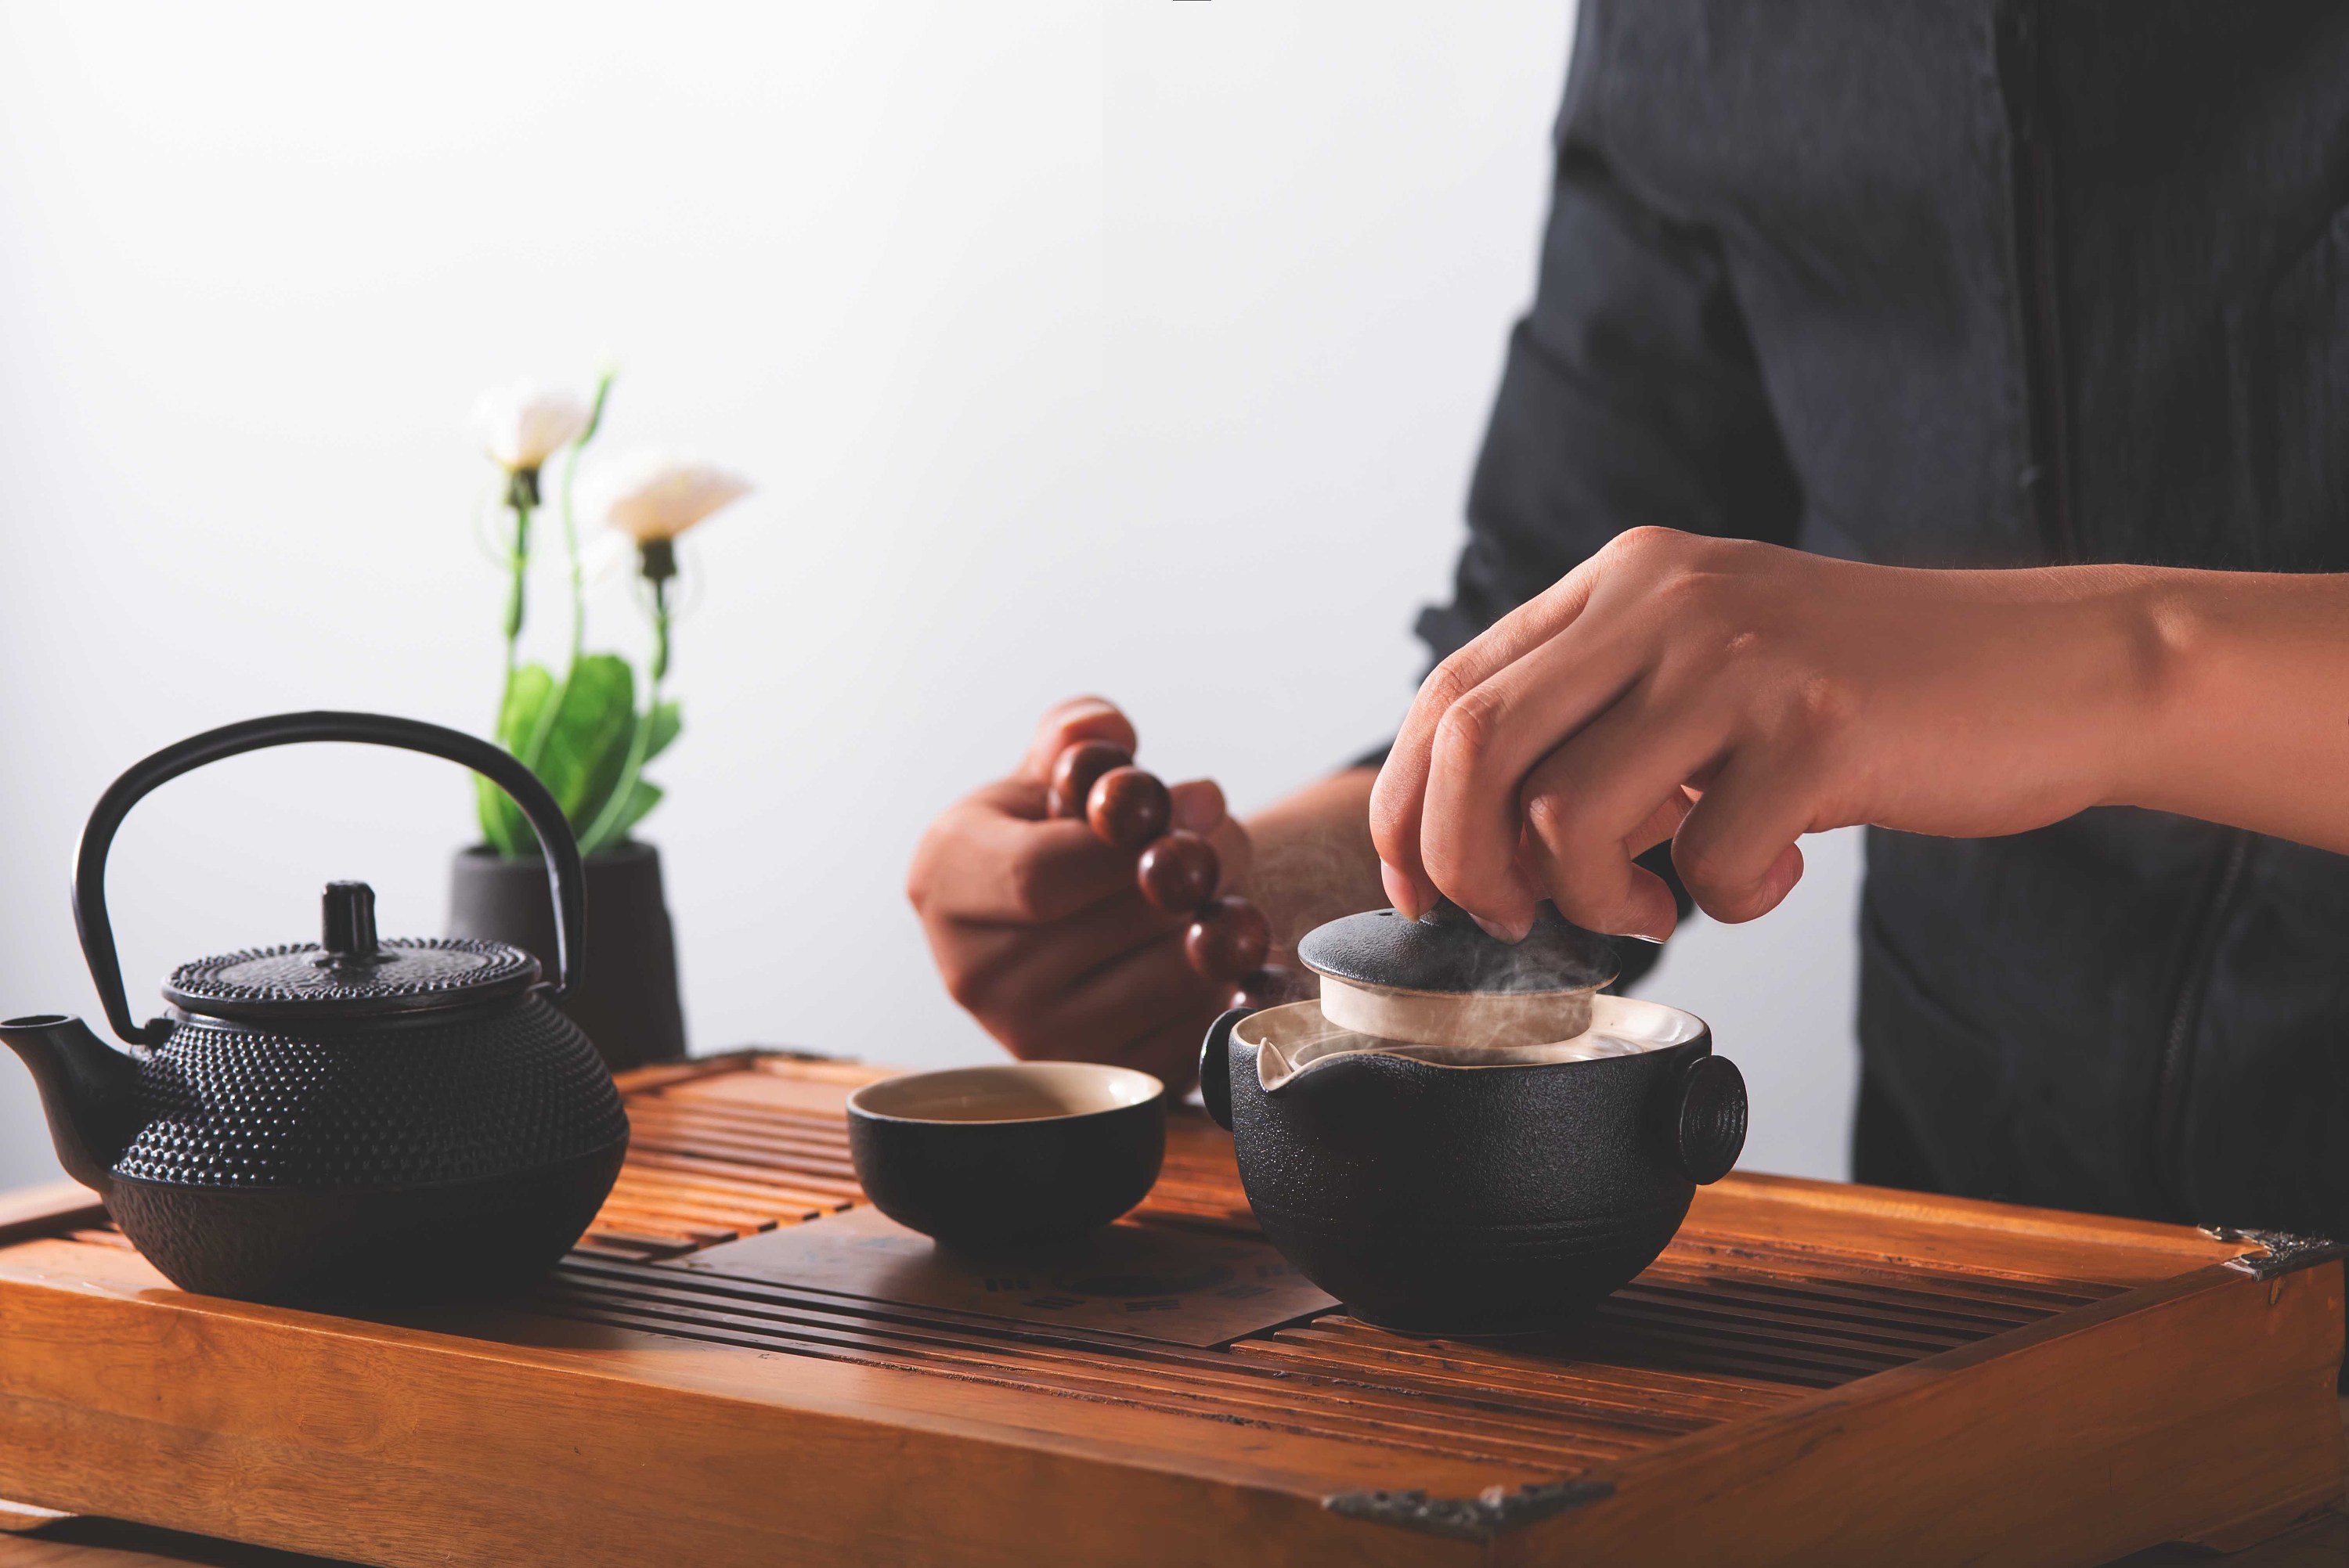 【津品茶话】喝茶时不常注意到的5个小礼节-津乔|匠制纯粹好茶